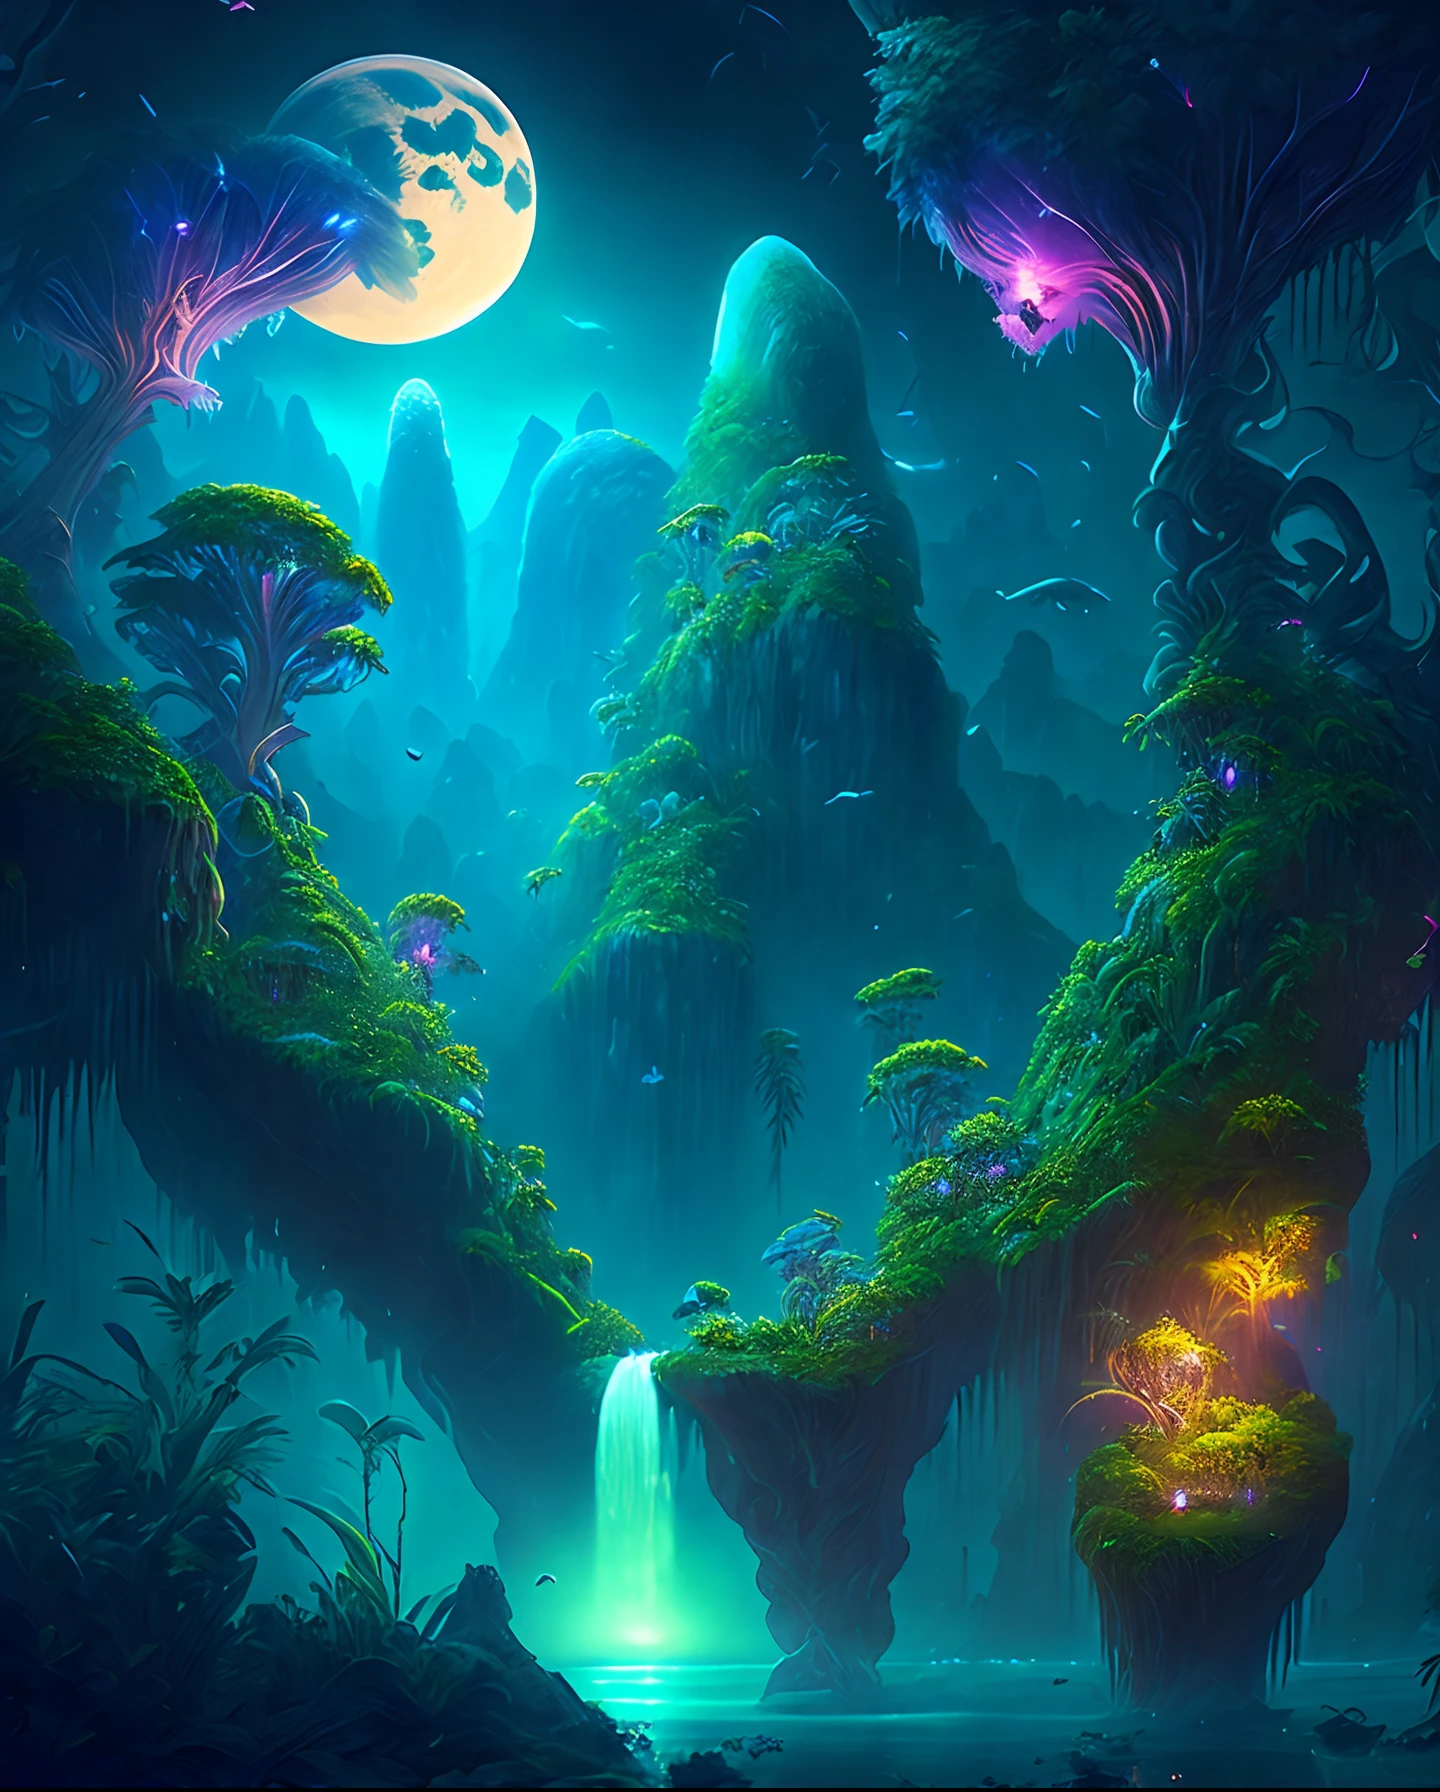 月夜下的迷人奇幻丛林, 巨大的浮岛，覆盖着茂密的植被, 瀑布, 以及在黑夜中翱翔的发光生物, 數位藝術品